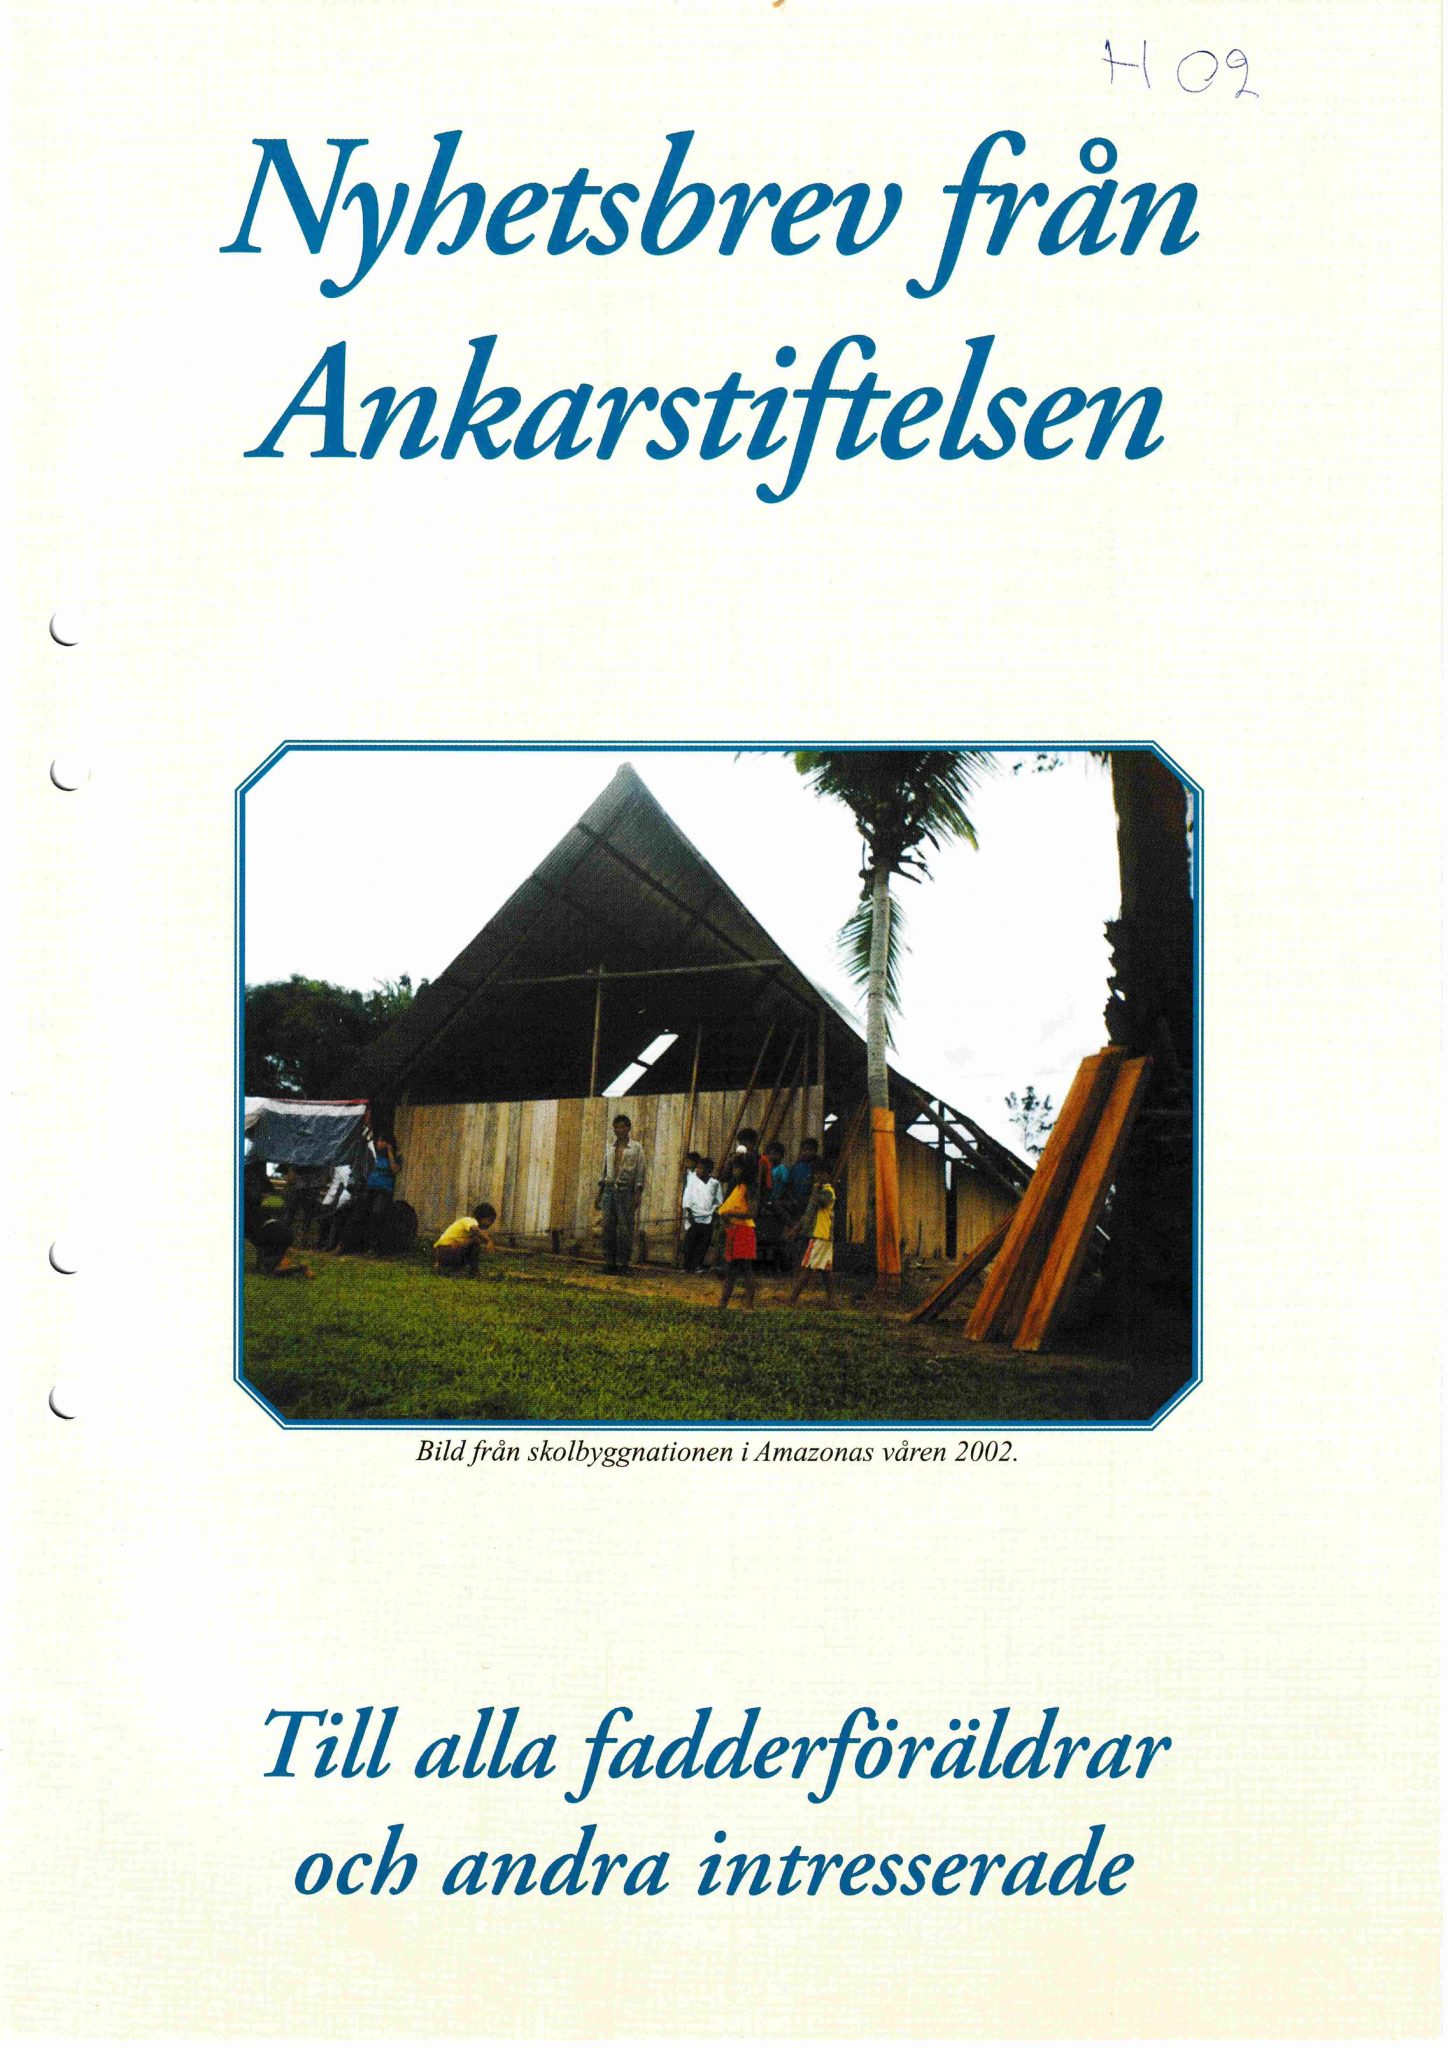 Bild på framsidan av Ankarbladet 2002 Nr. 2